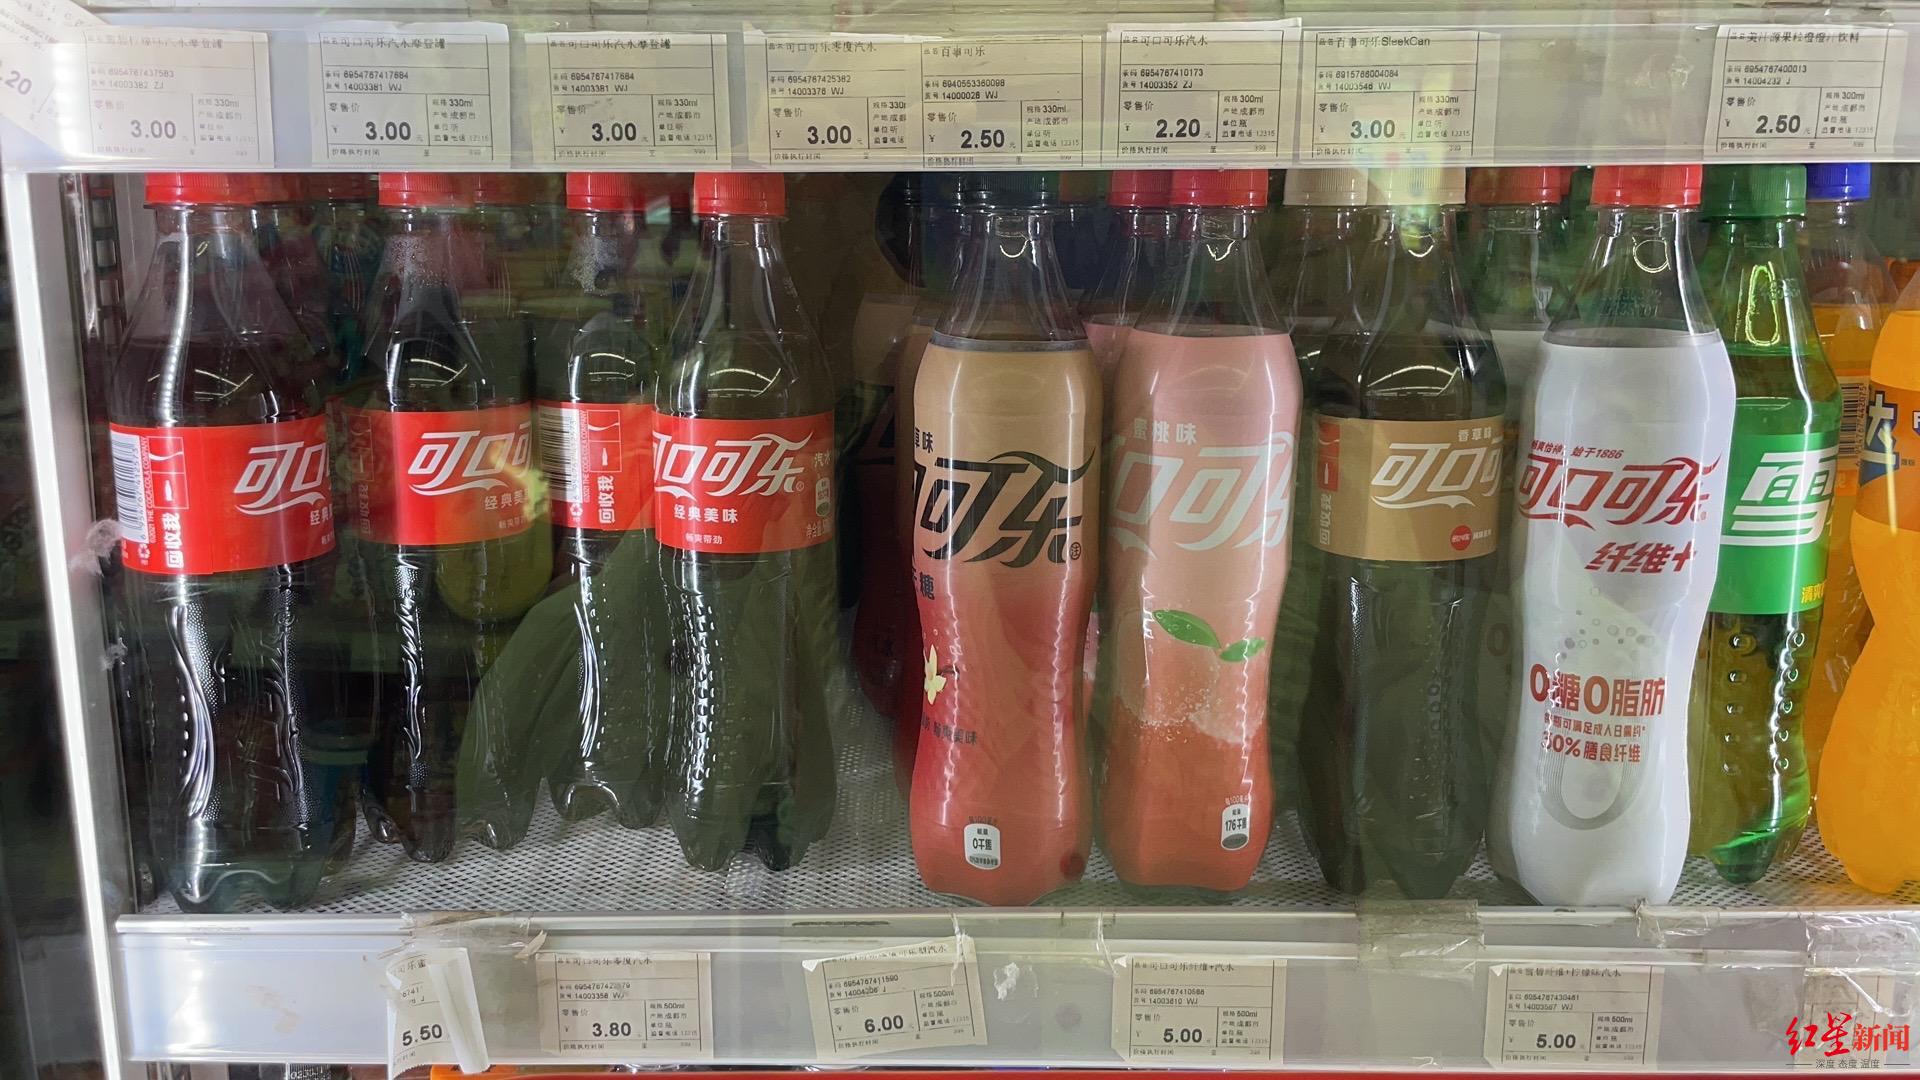 2023年5月18日 四川成都的见福便利店售价3.8元/瓶的可口可乐